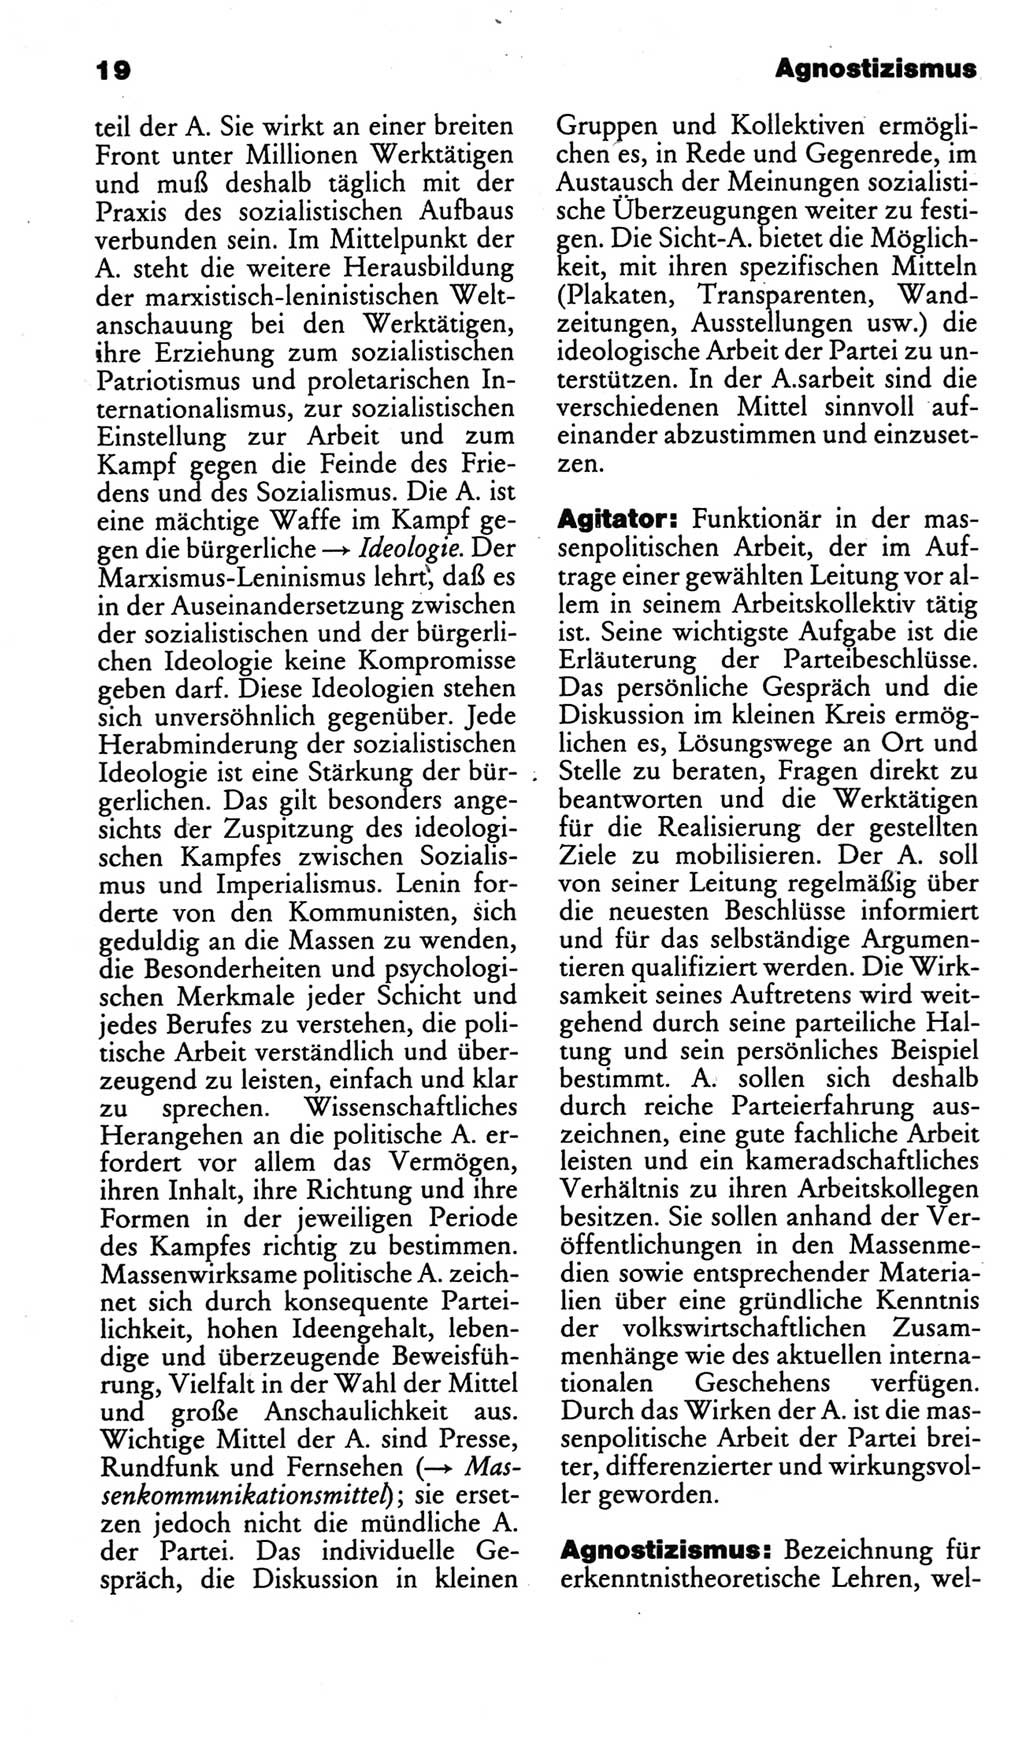 Kleines politisches Wörterbuch [Deutsche Demokratische Republik (DDR)] 1986, Seite 19 (Kl. pol. Wb. DDR 1986, S. 19)